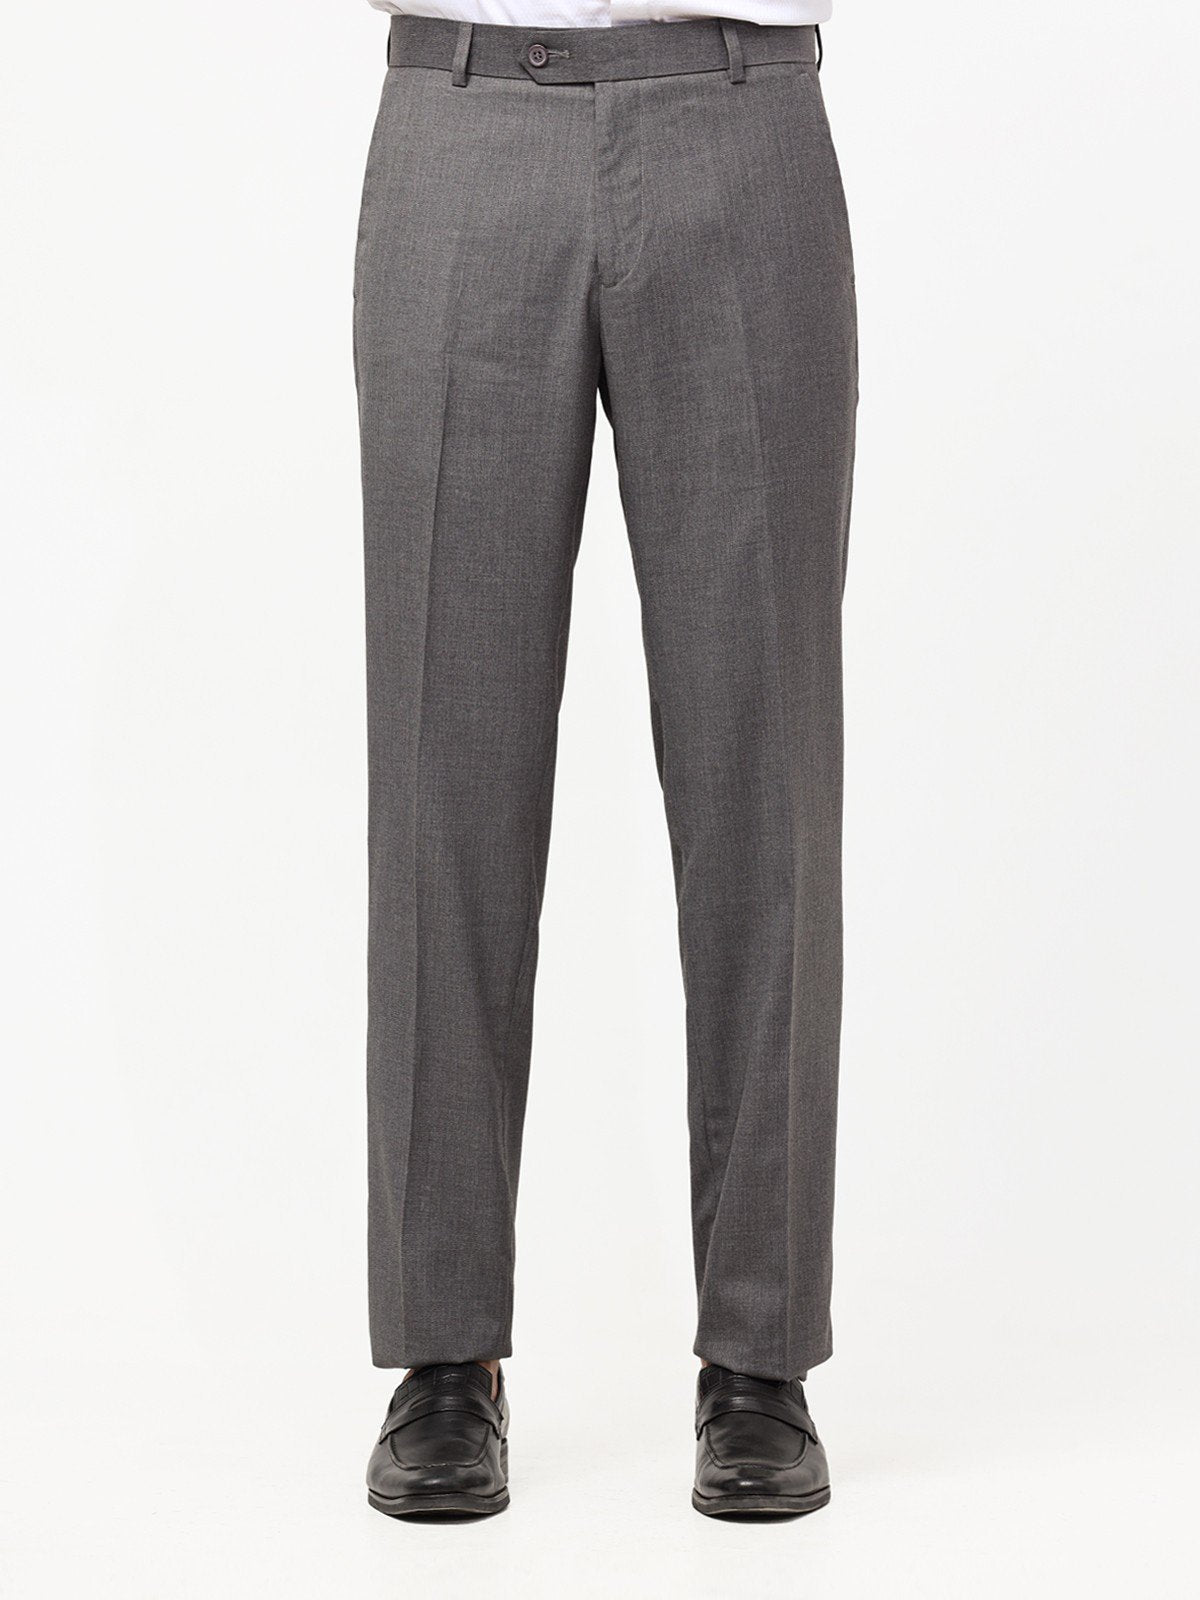 Men's Grey Pant - EMBPF22-15232